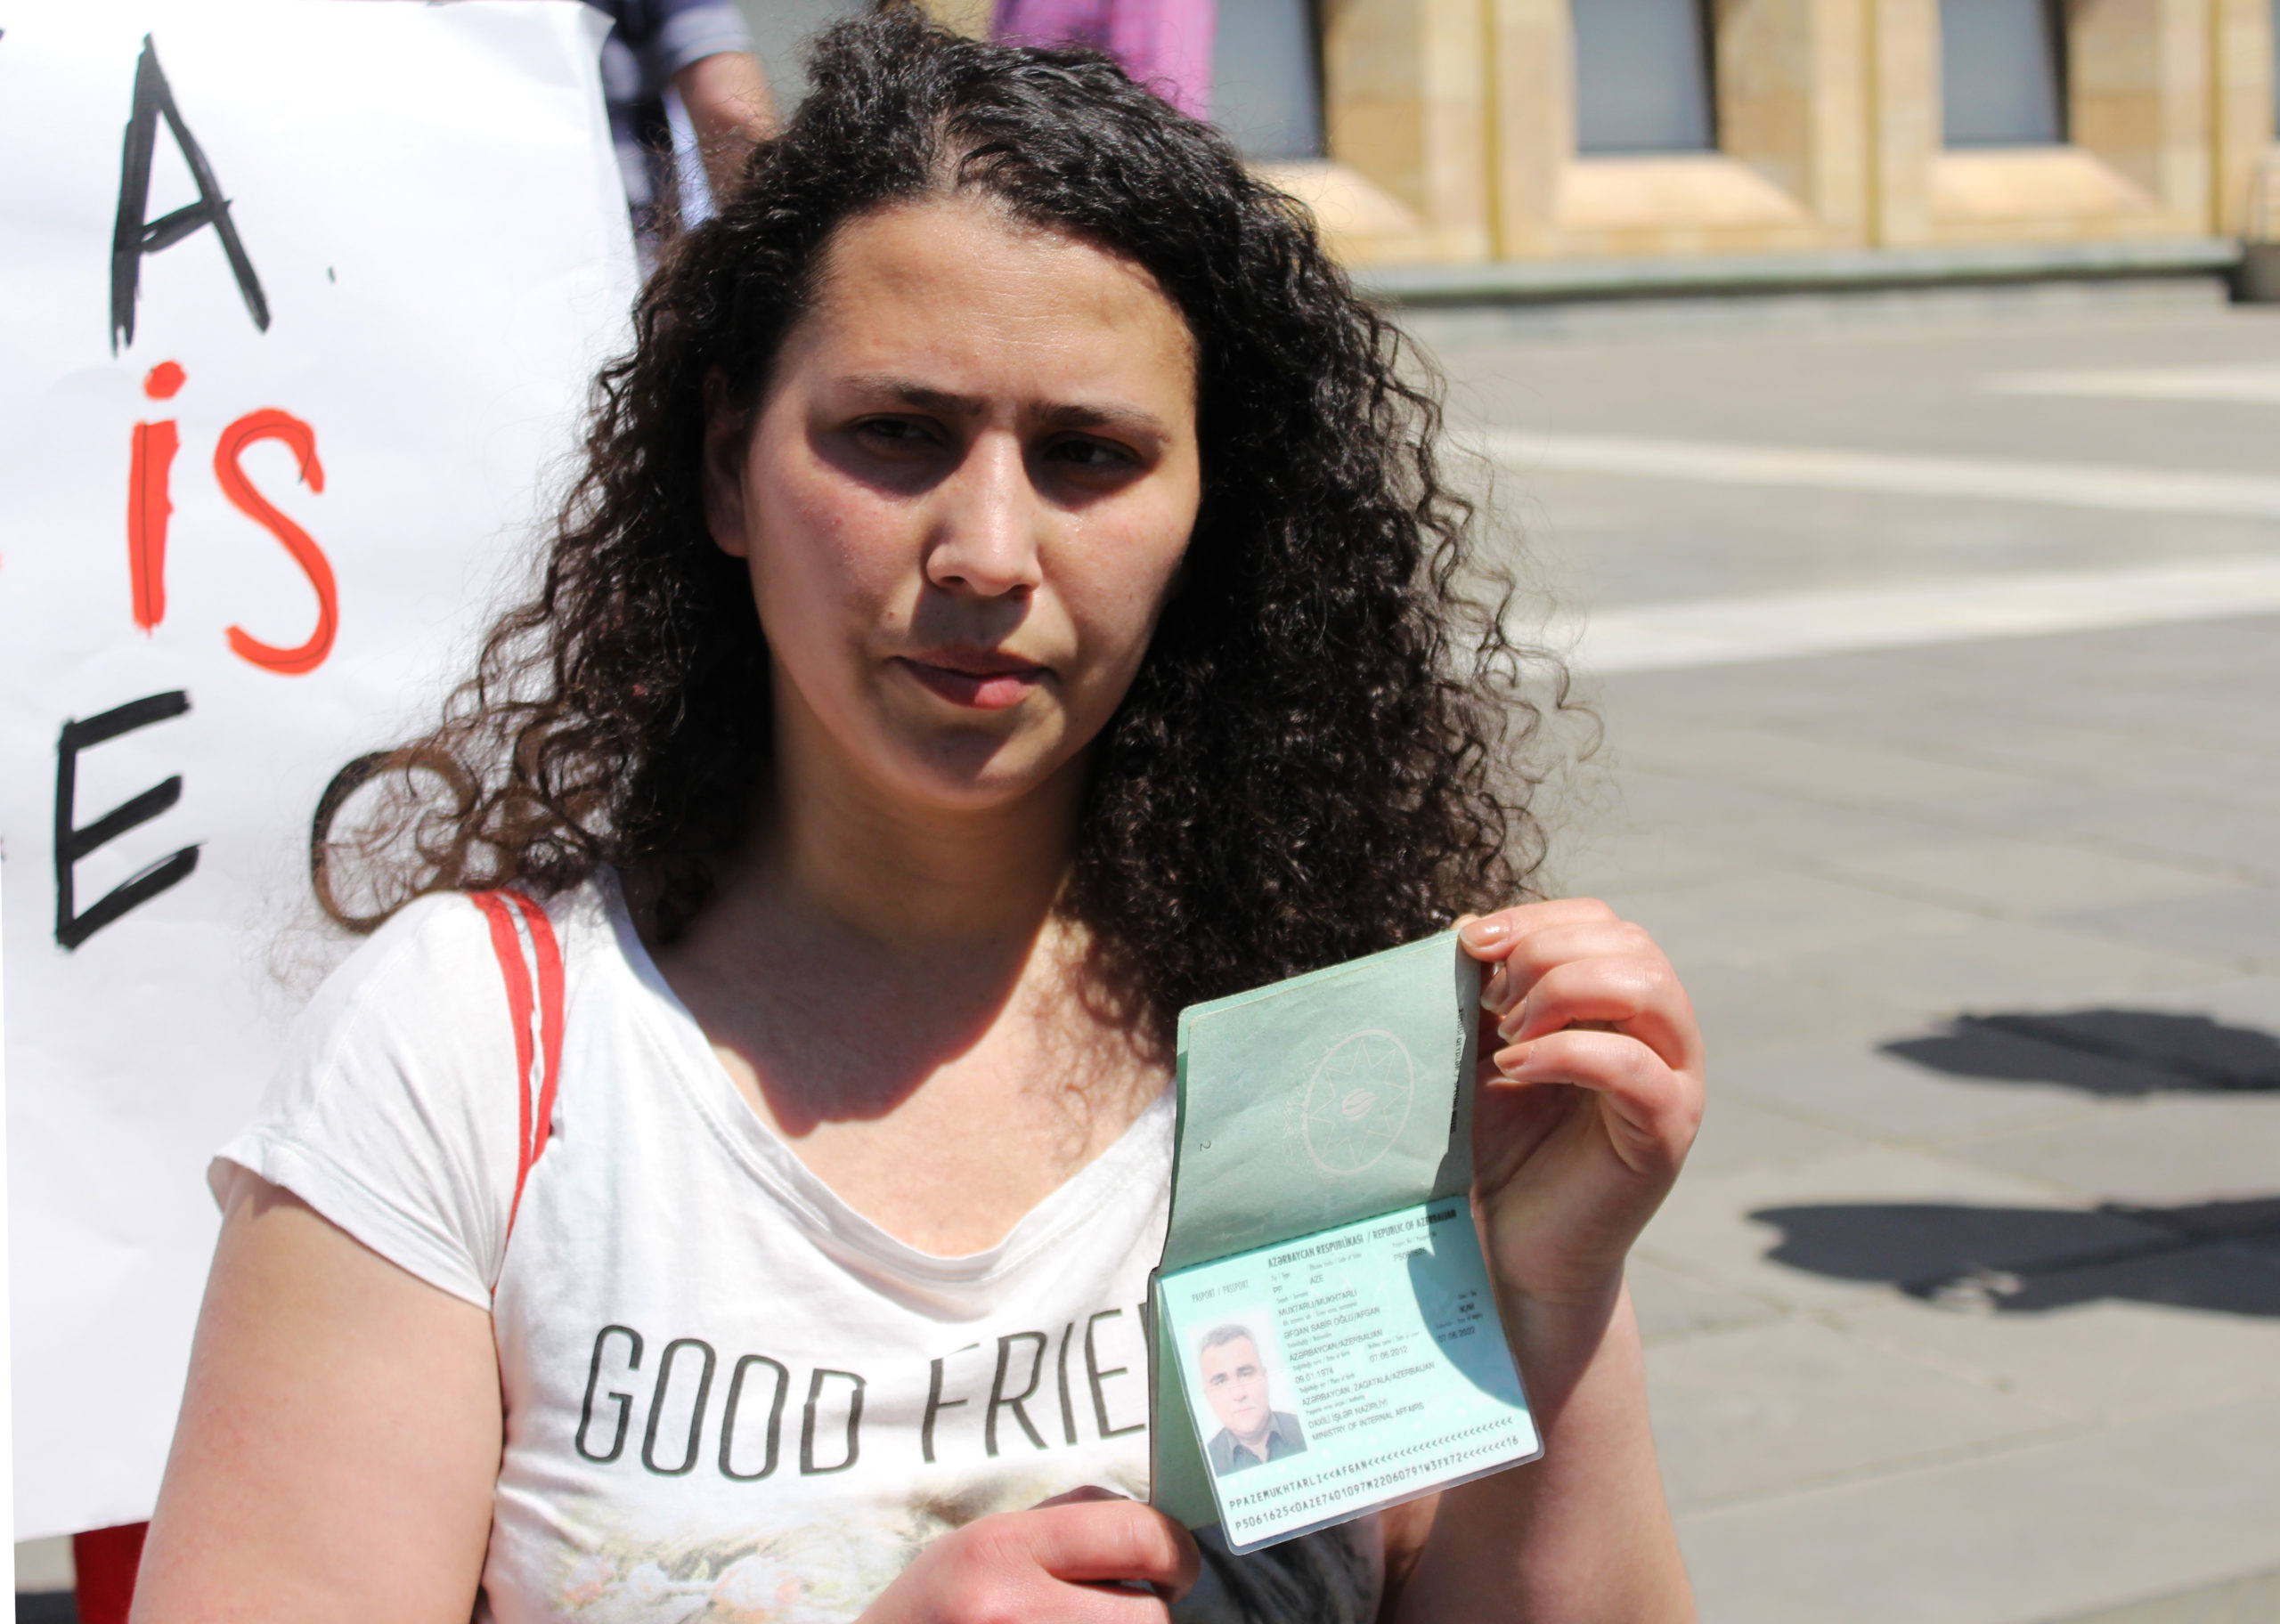 Супруга Афгана Мухтарлы Лейла Мустафаева продемонстрировала участникам паспорт своего мужа, что опровергает версию Генпрокуратуры Азербайджана, что Мухтарлы “решил нелегально пересечь границу”